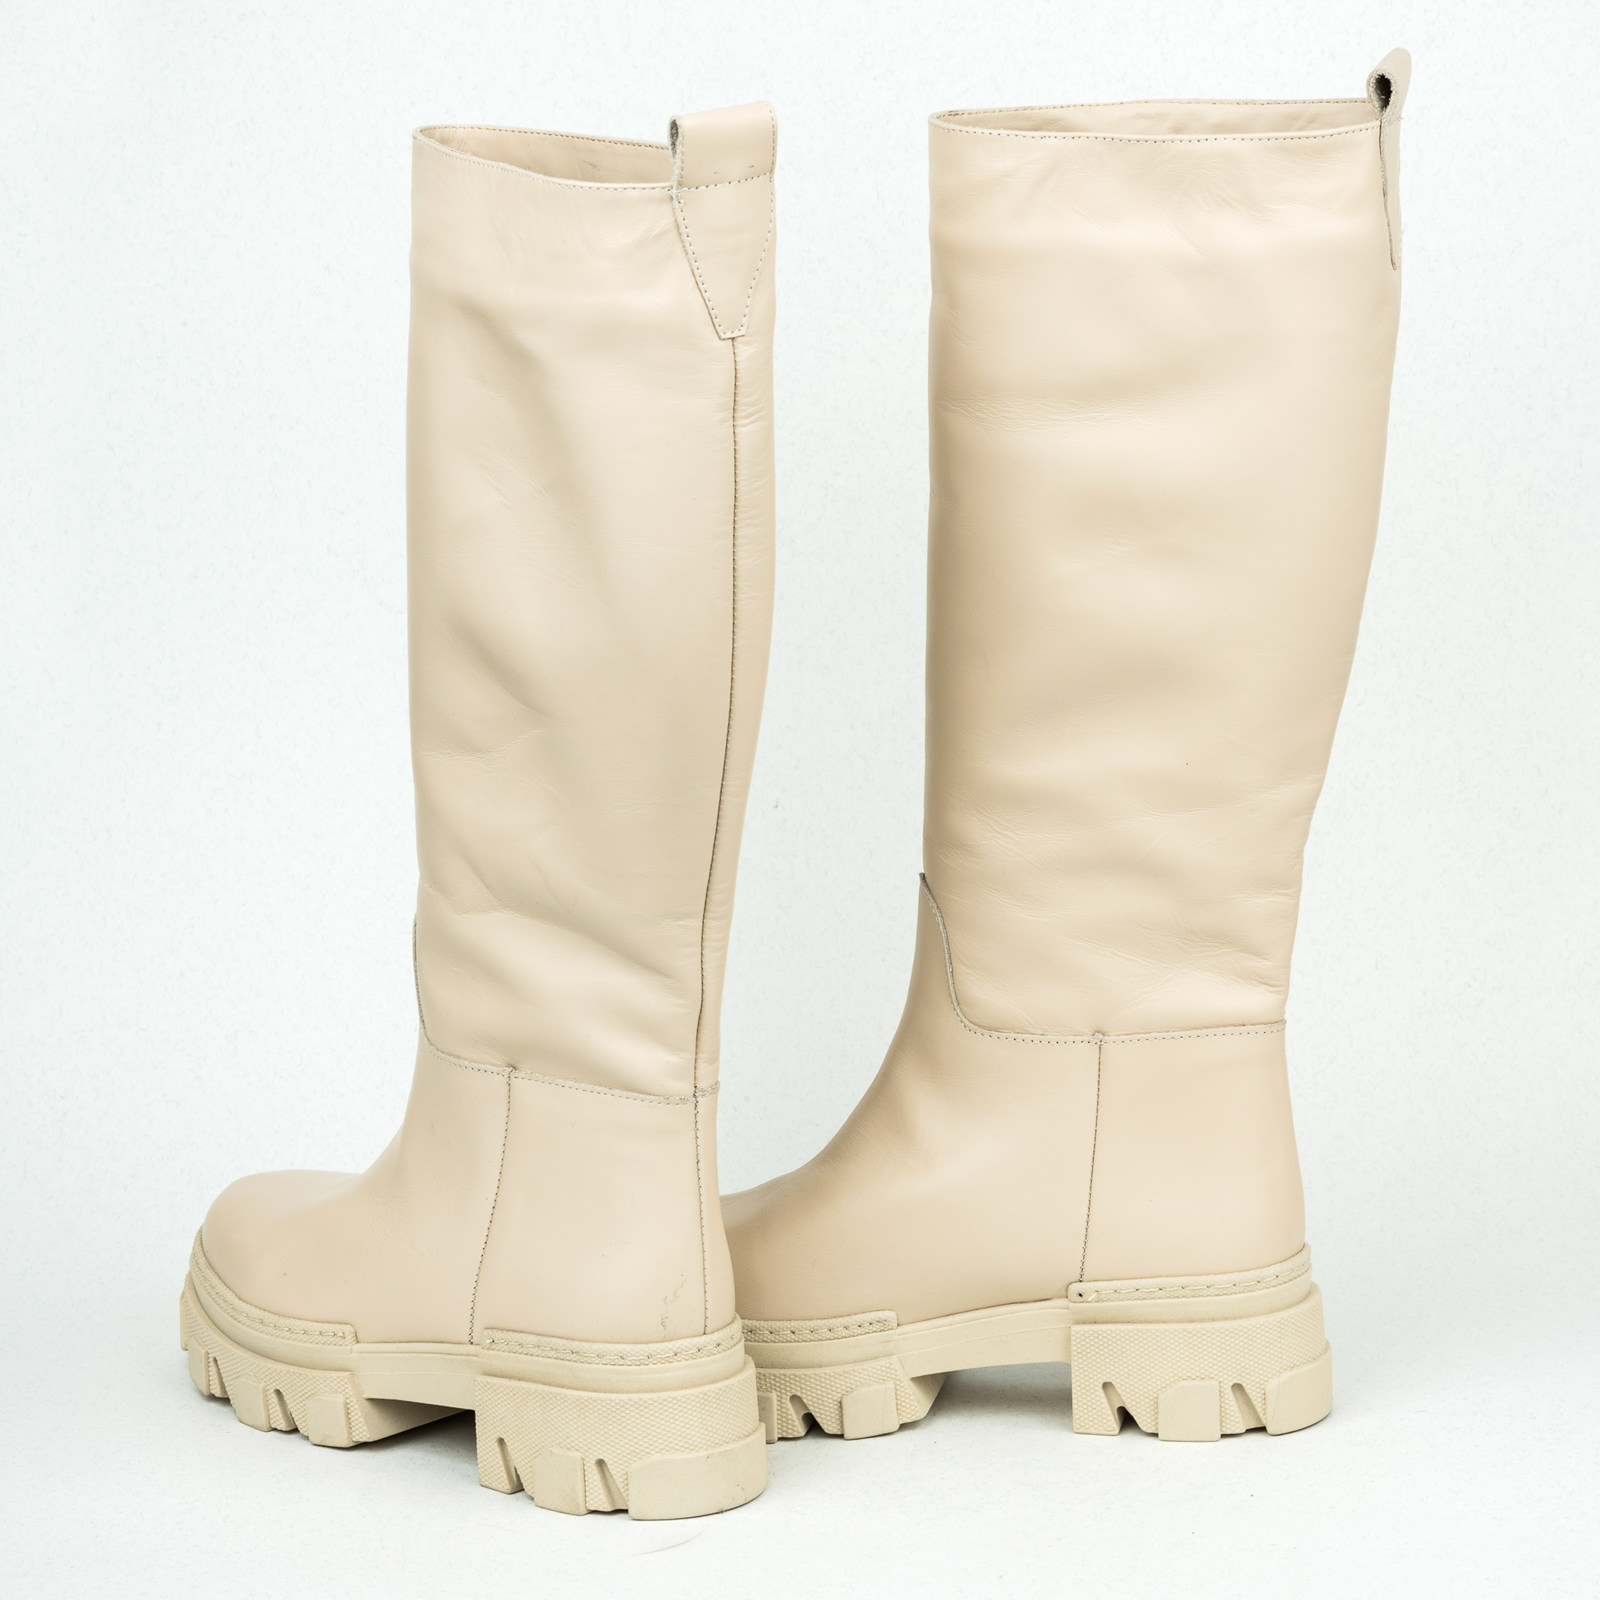 Leather WATERPROOF boots B128 - LIGHT BEIGE